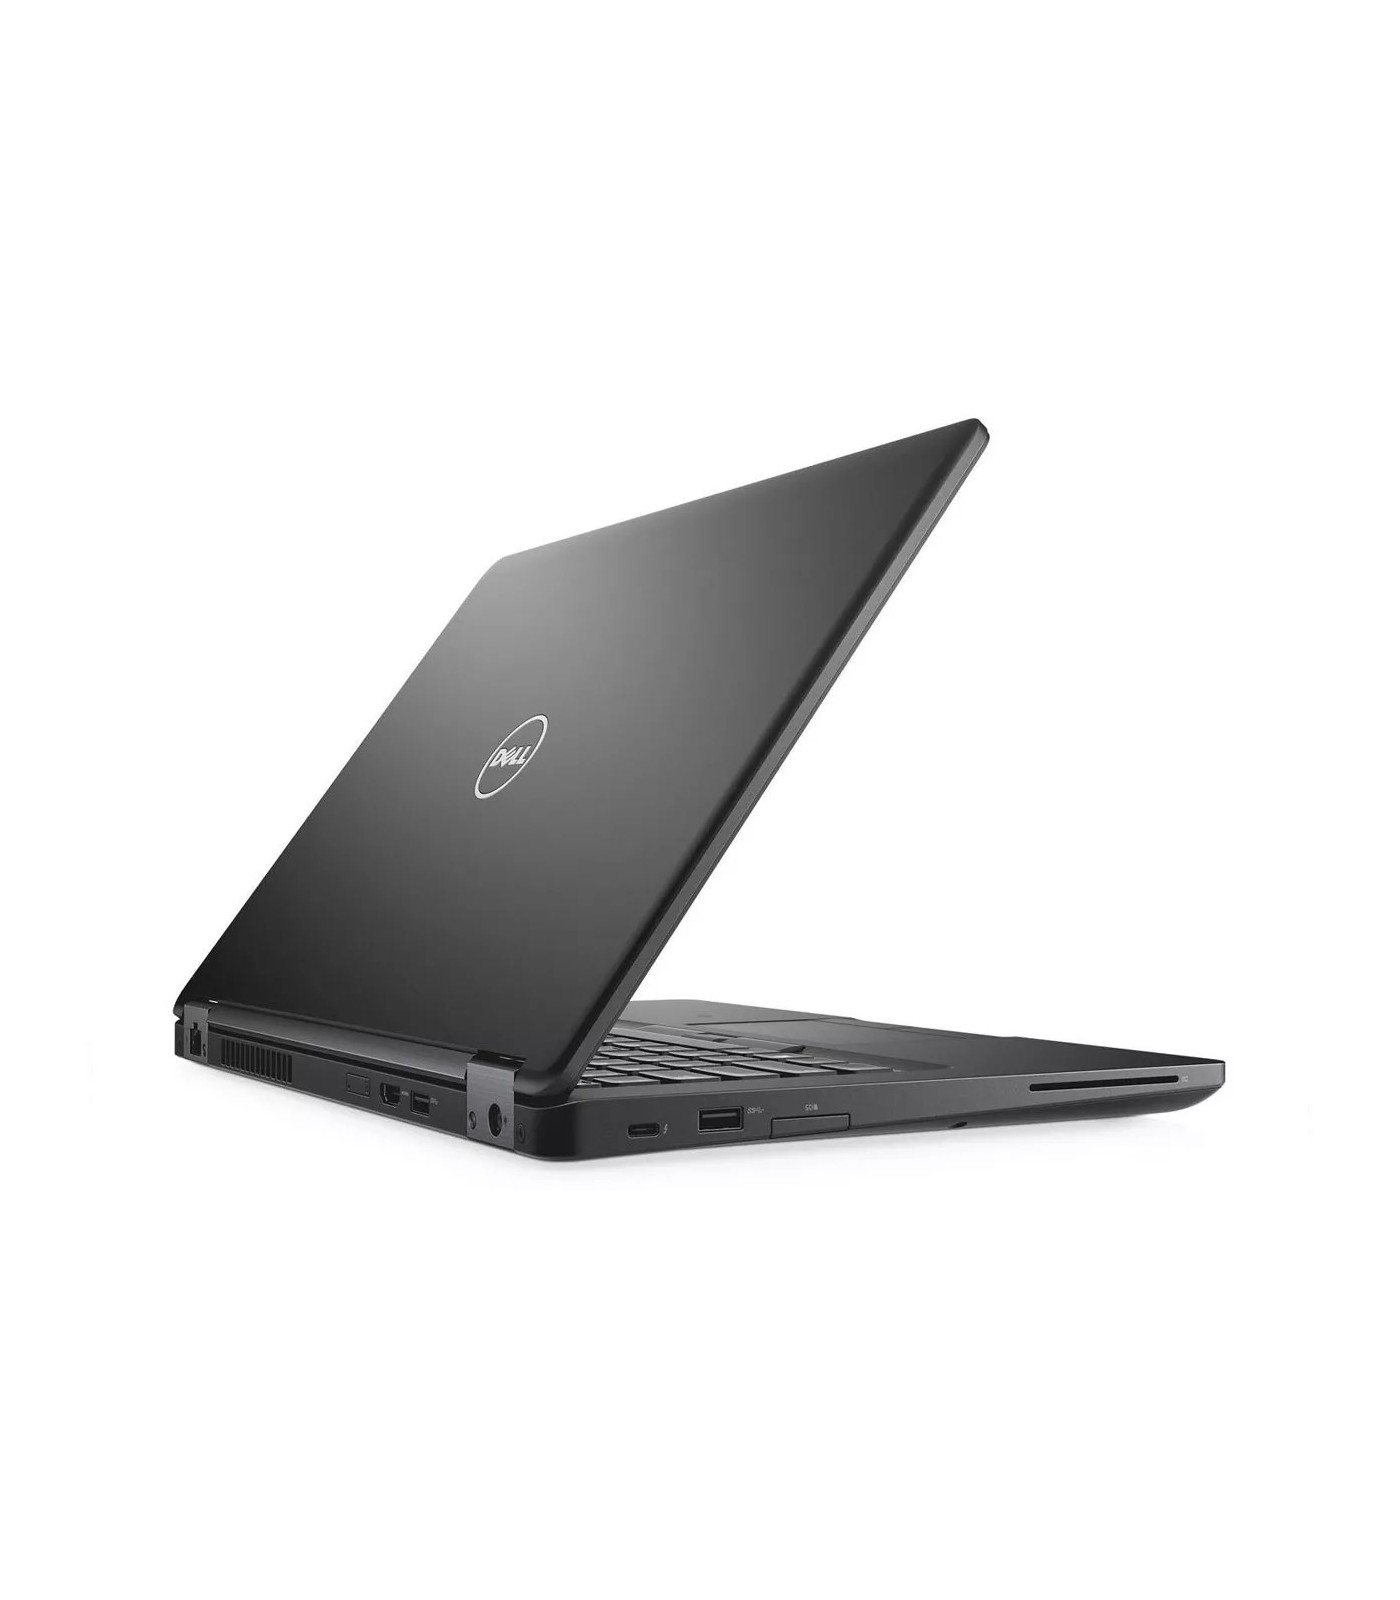 Poleasingowy laptop Dell Latitude 5480 z procesorem i5-7200U w klasie B